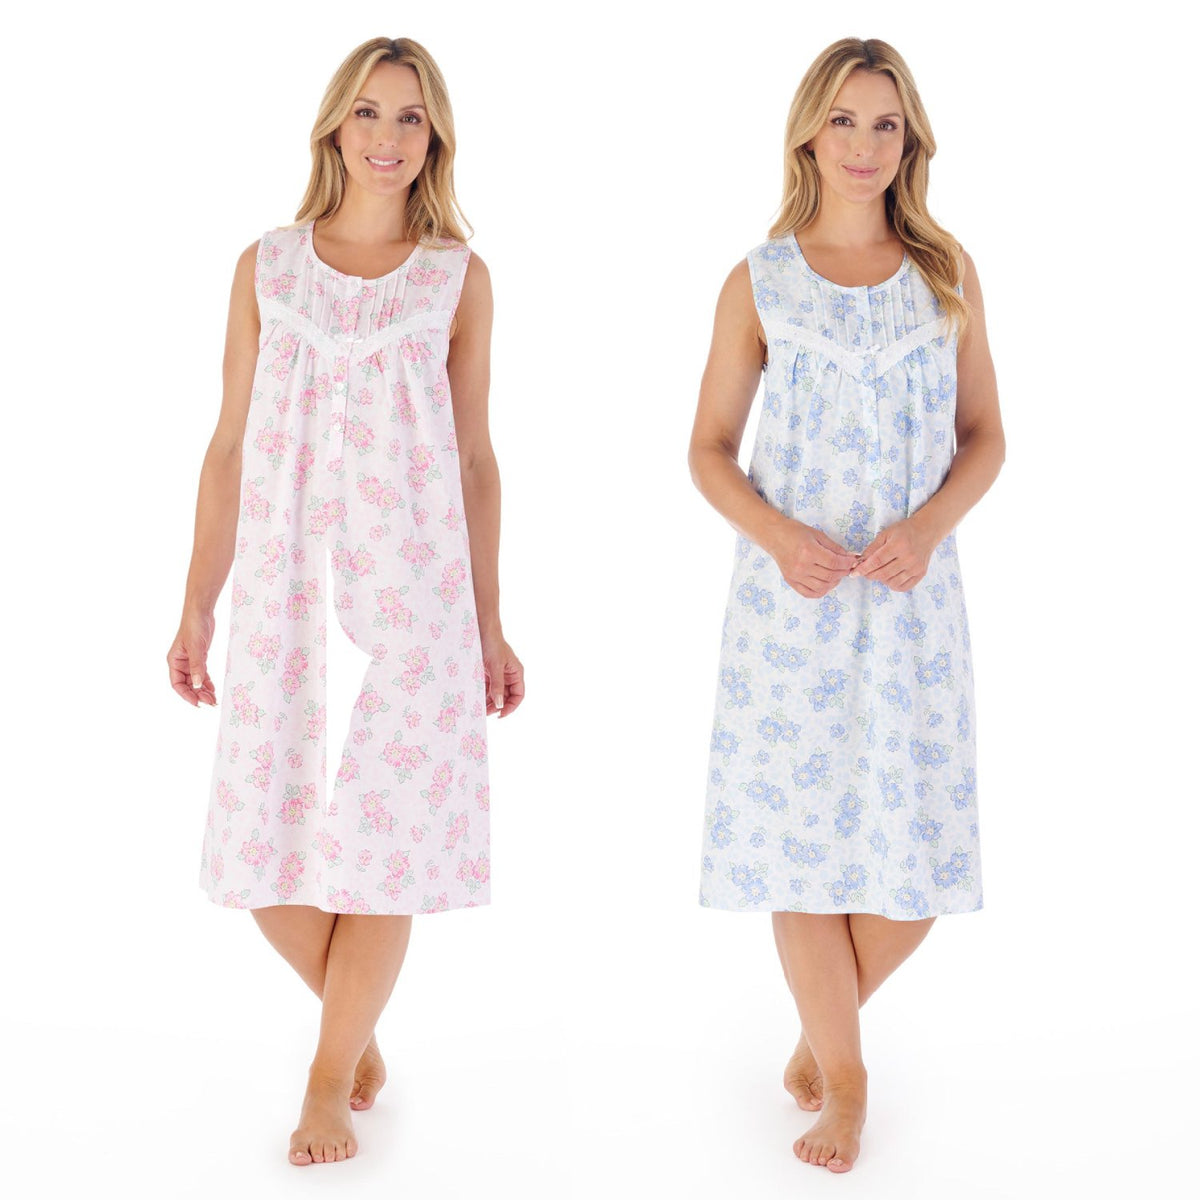 100% Cotton Nightdresses / Nightgowns Size S, M, L, XL, XXL, XXXL